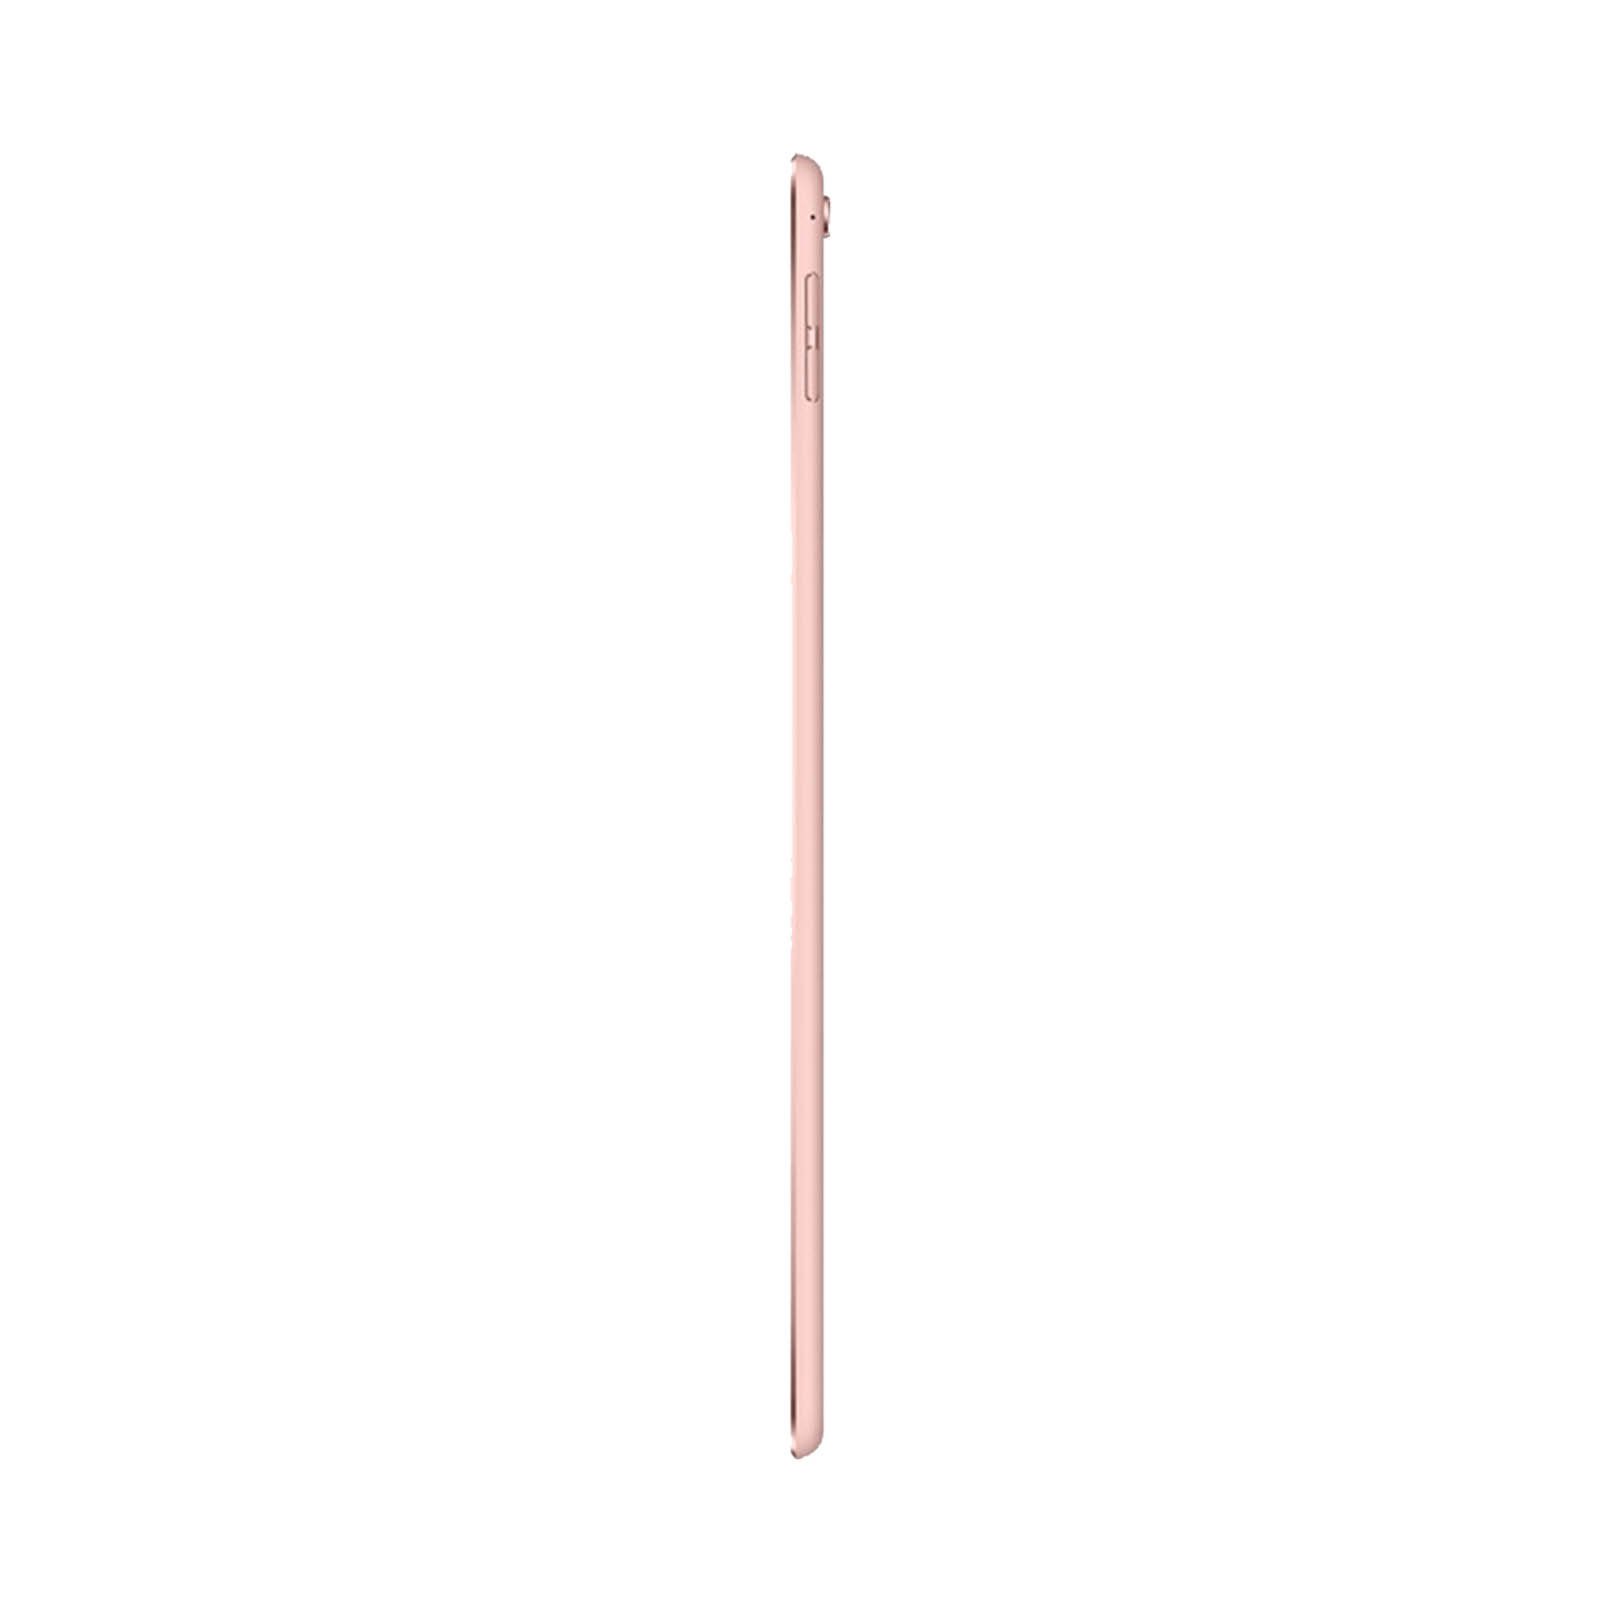 iPad Pro 9.7 Inch 32GB Rose Gold Good - WiFi